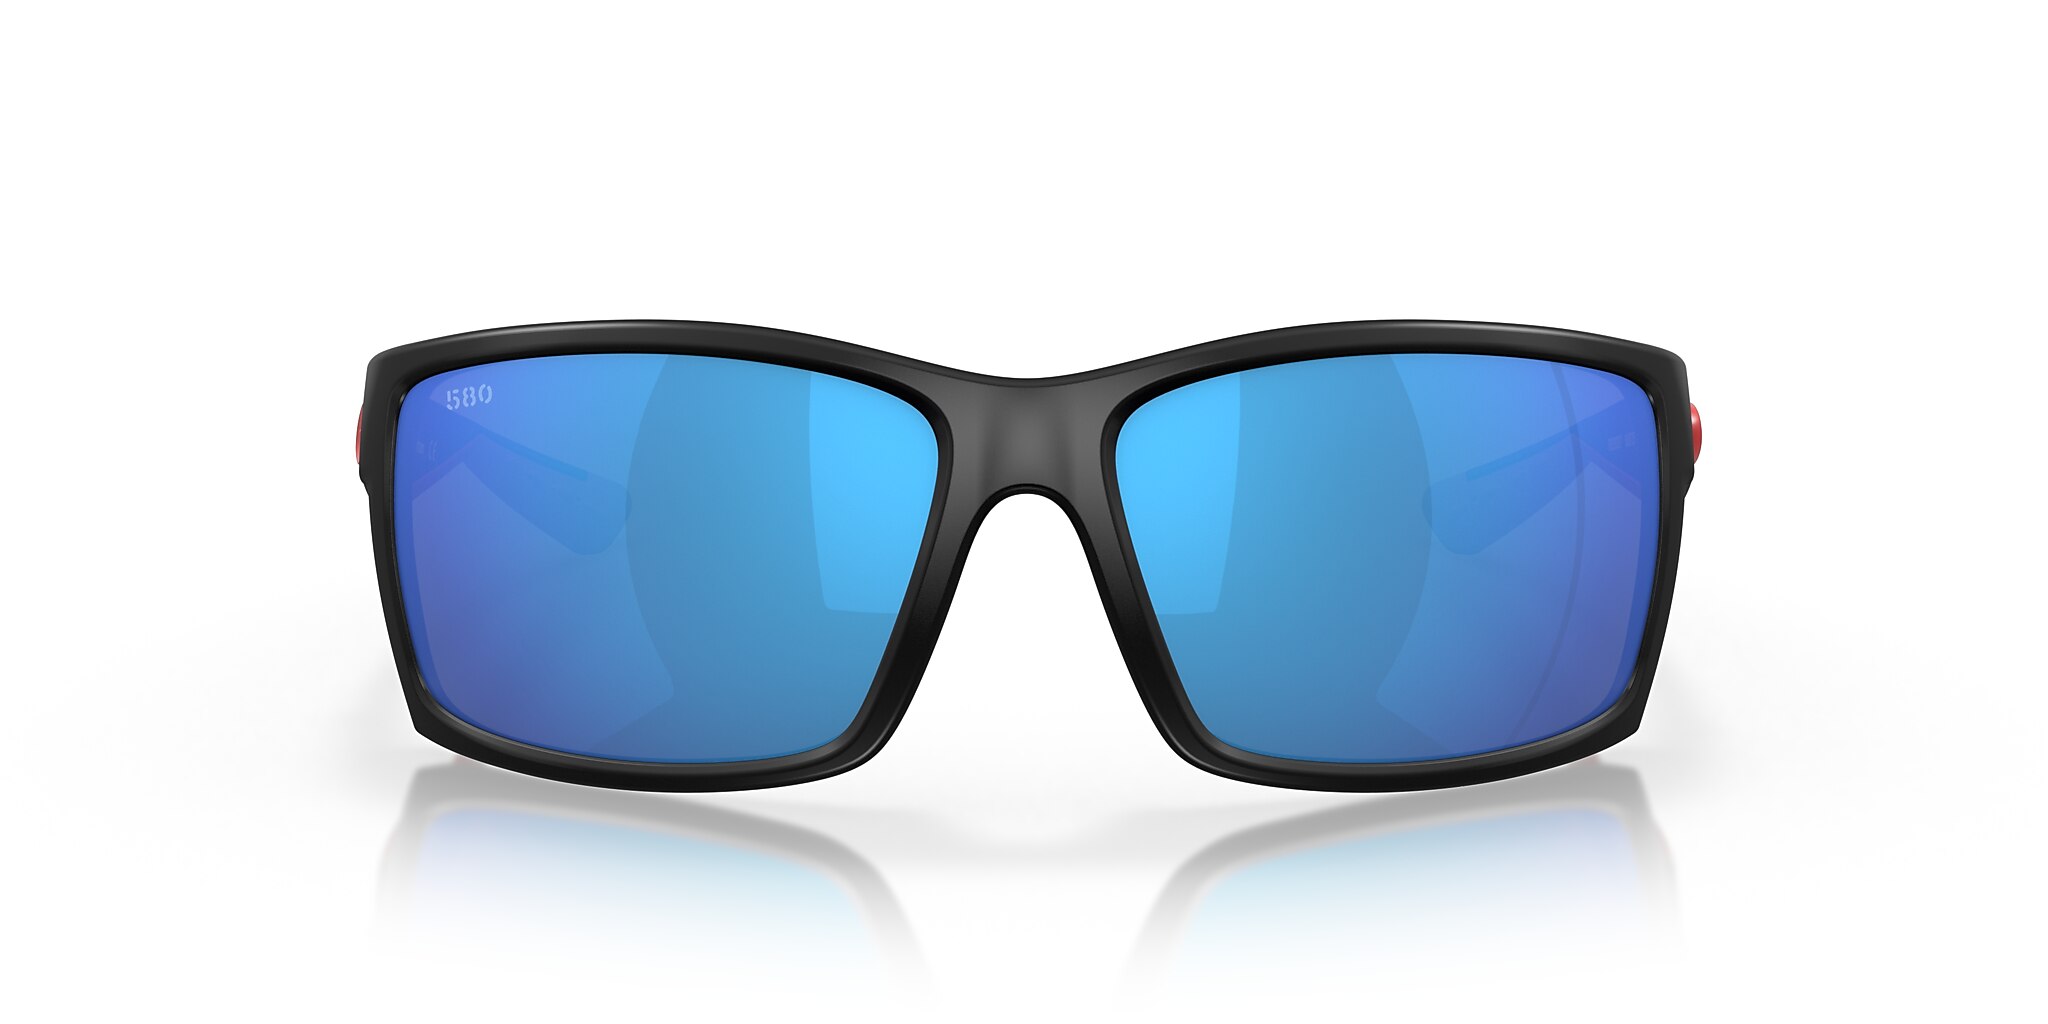 Reefton Polarized Sunglasses in Blue Mirror | Costa Del Mar®